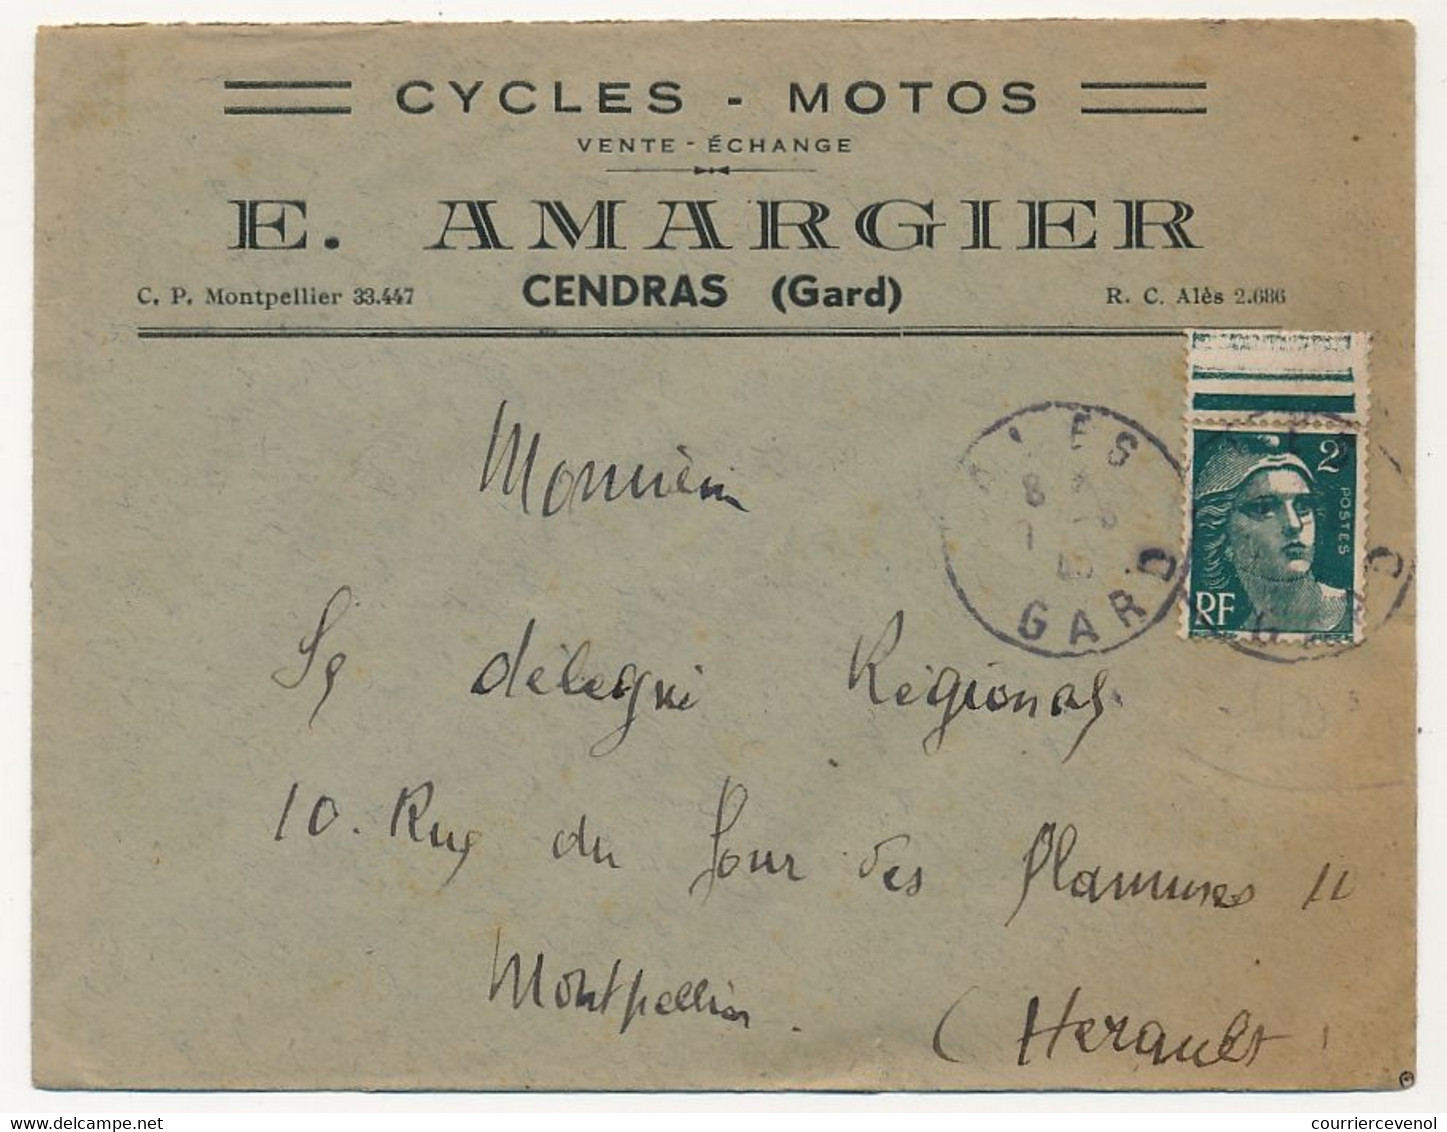 FRANCE - Env. En-tête "Cycles, Motos" E. ARMAGIER - Cendras (Gard) - Affr 2F Gandon 1945 - Sports & Tourisme